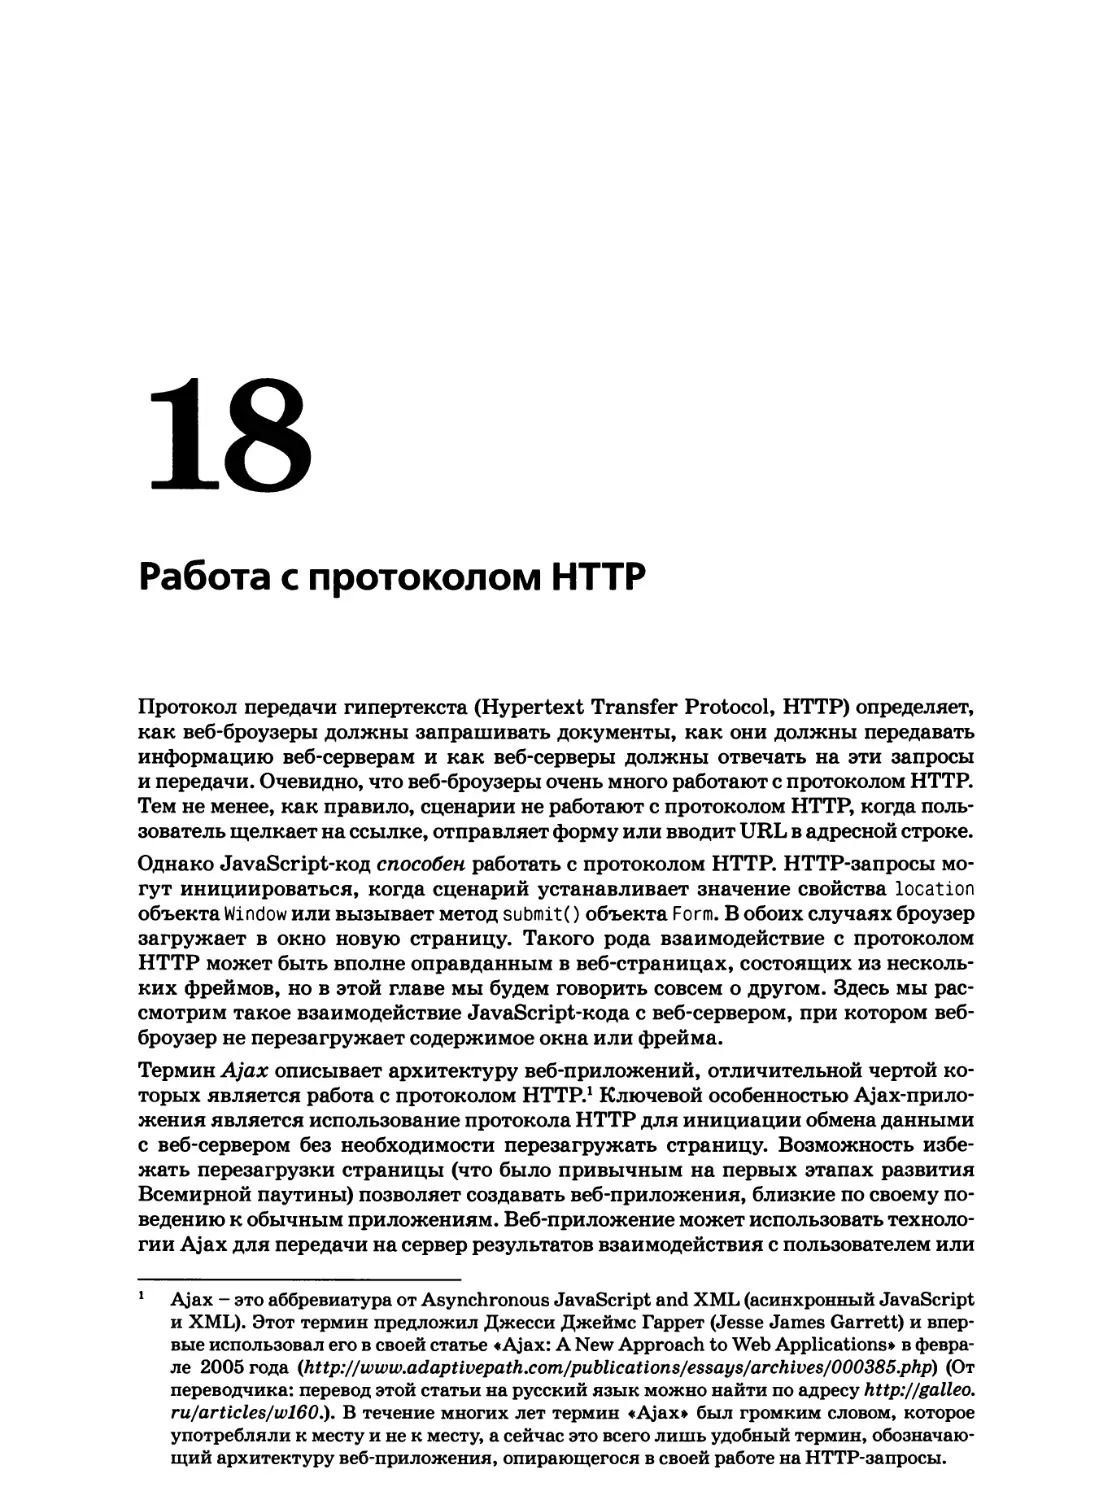 18. Работа с протоколом HTTP